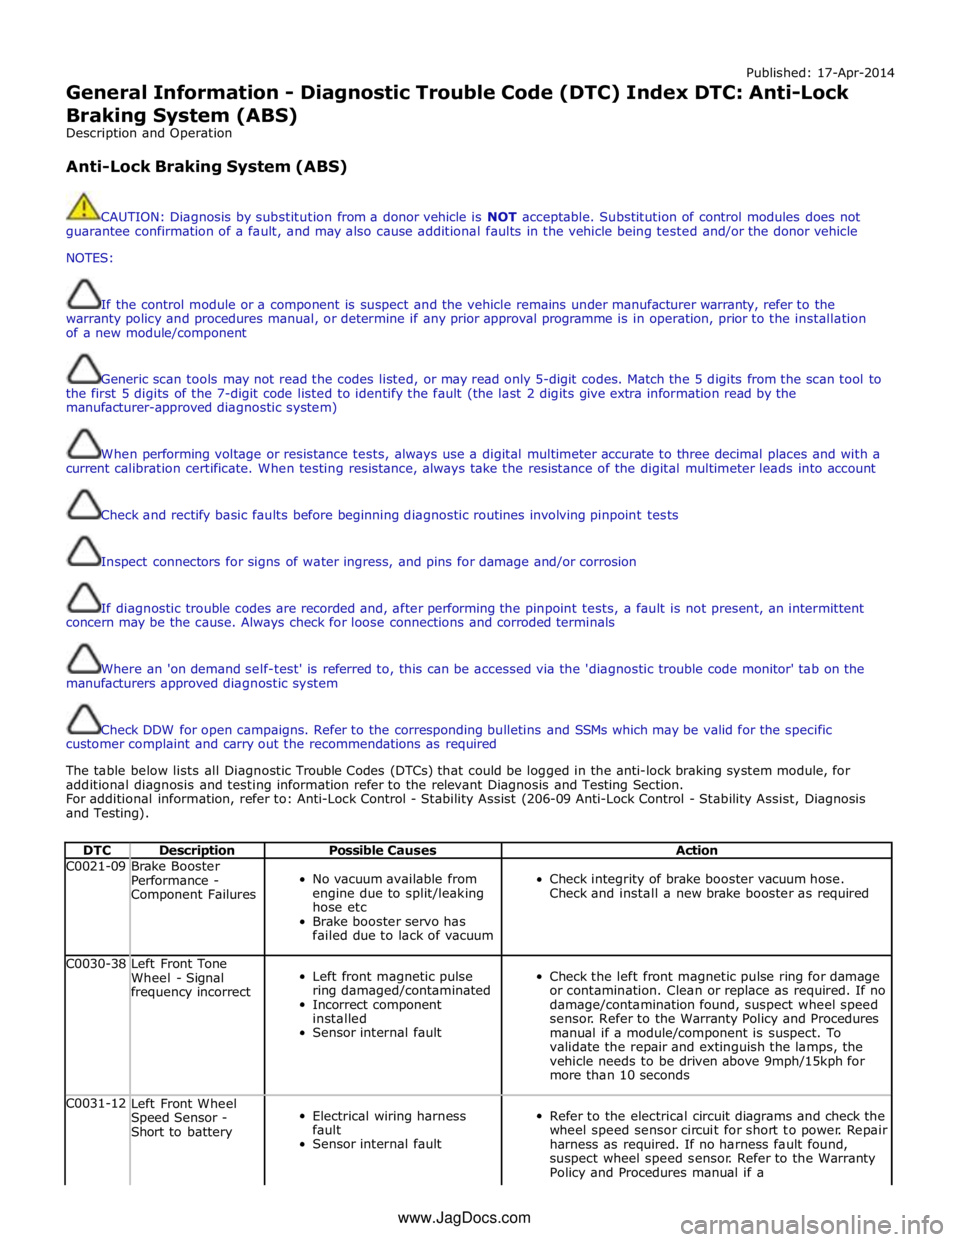 JAGUAR XFR 2010 1.G Workshop Manual Published: 17-Apr-2014 
General Information - Diagnostic Trouble Code (DTC) Index DTC: Anti-Lock Braking System (ABS) 
Description and Operation 
 
Anti-Lock Braking System (ABS) 
 
 
CAUTION: Diagnos